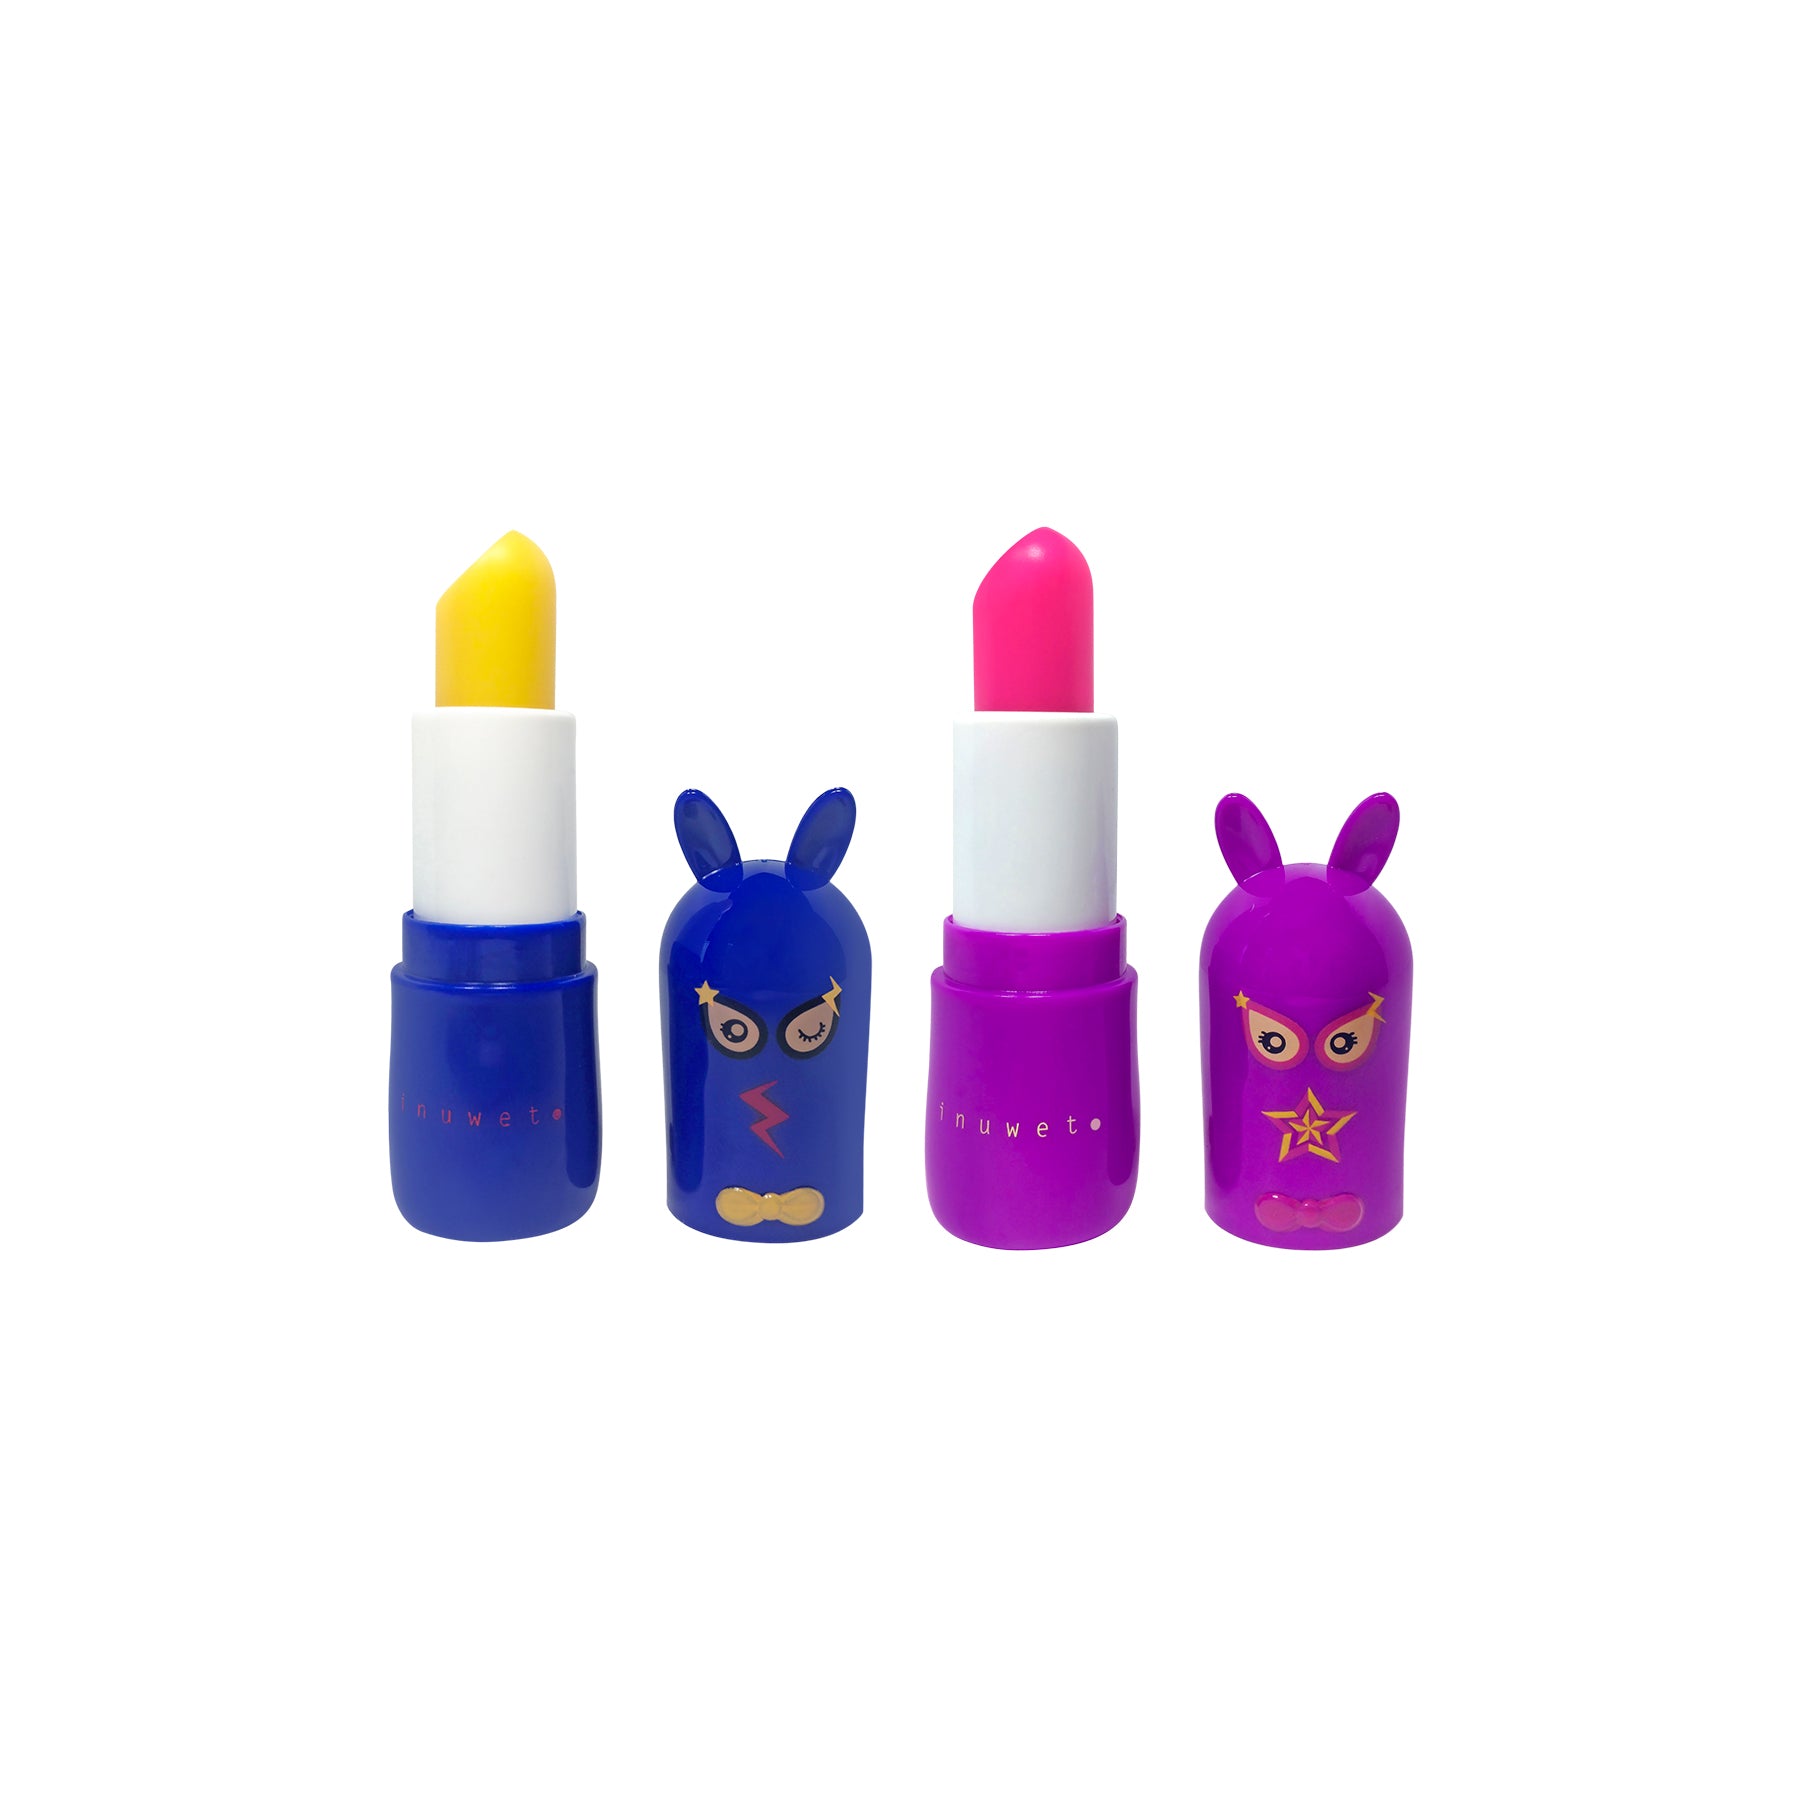 INUWET Bunny Lip Balm Superhero Duo Gift Set - Raspberry & Kiwi